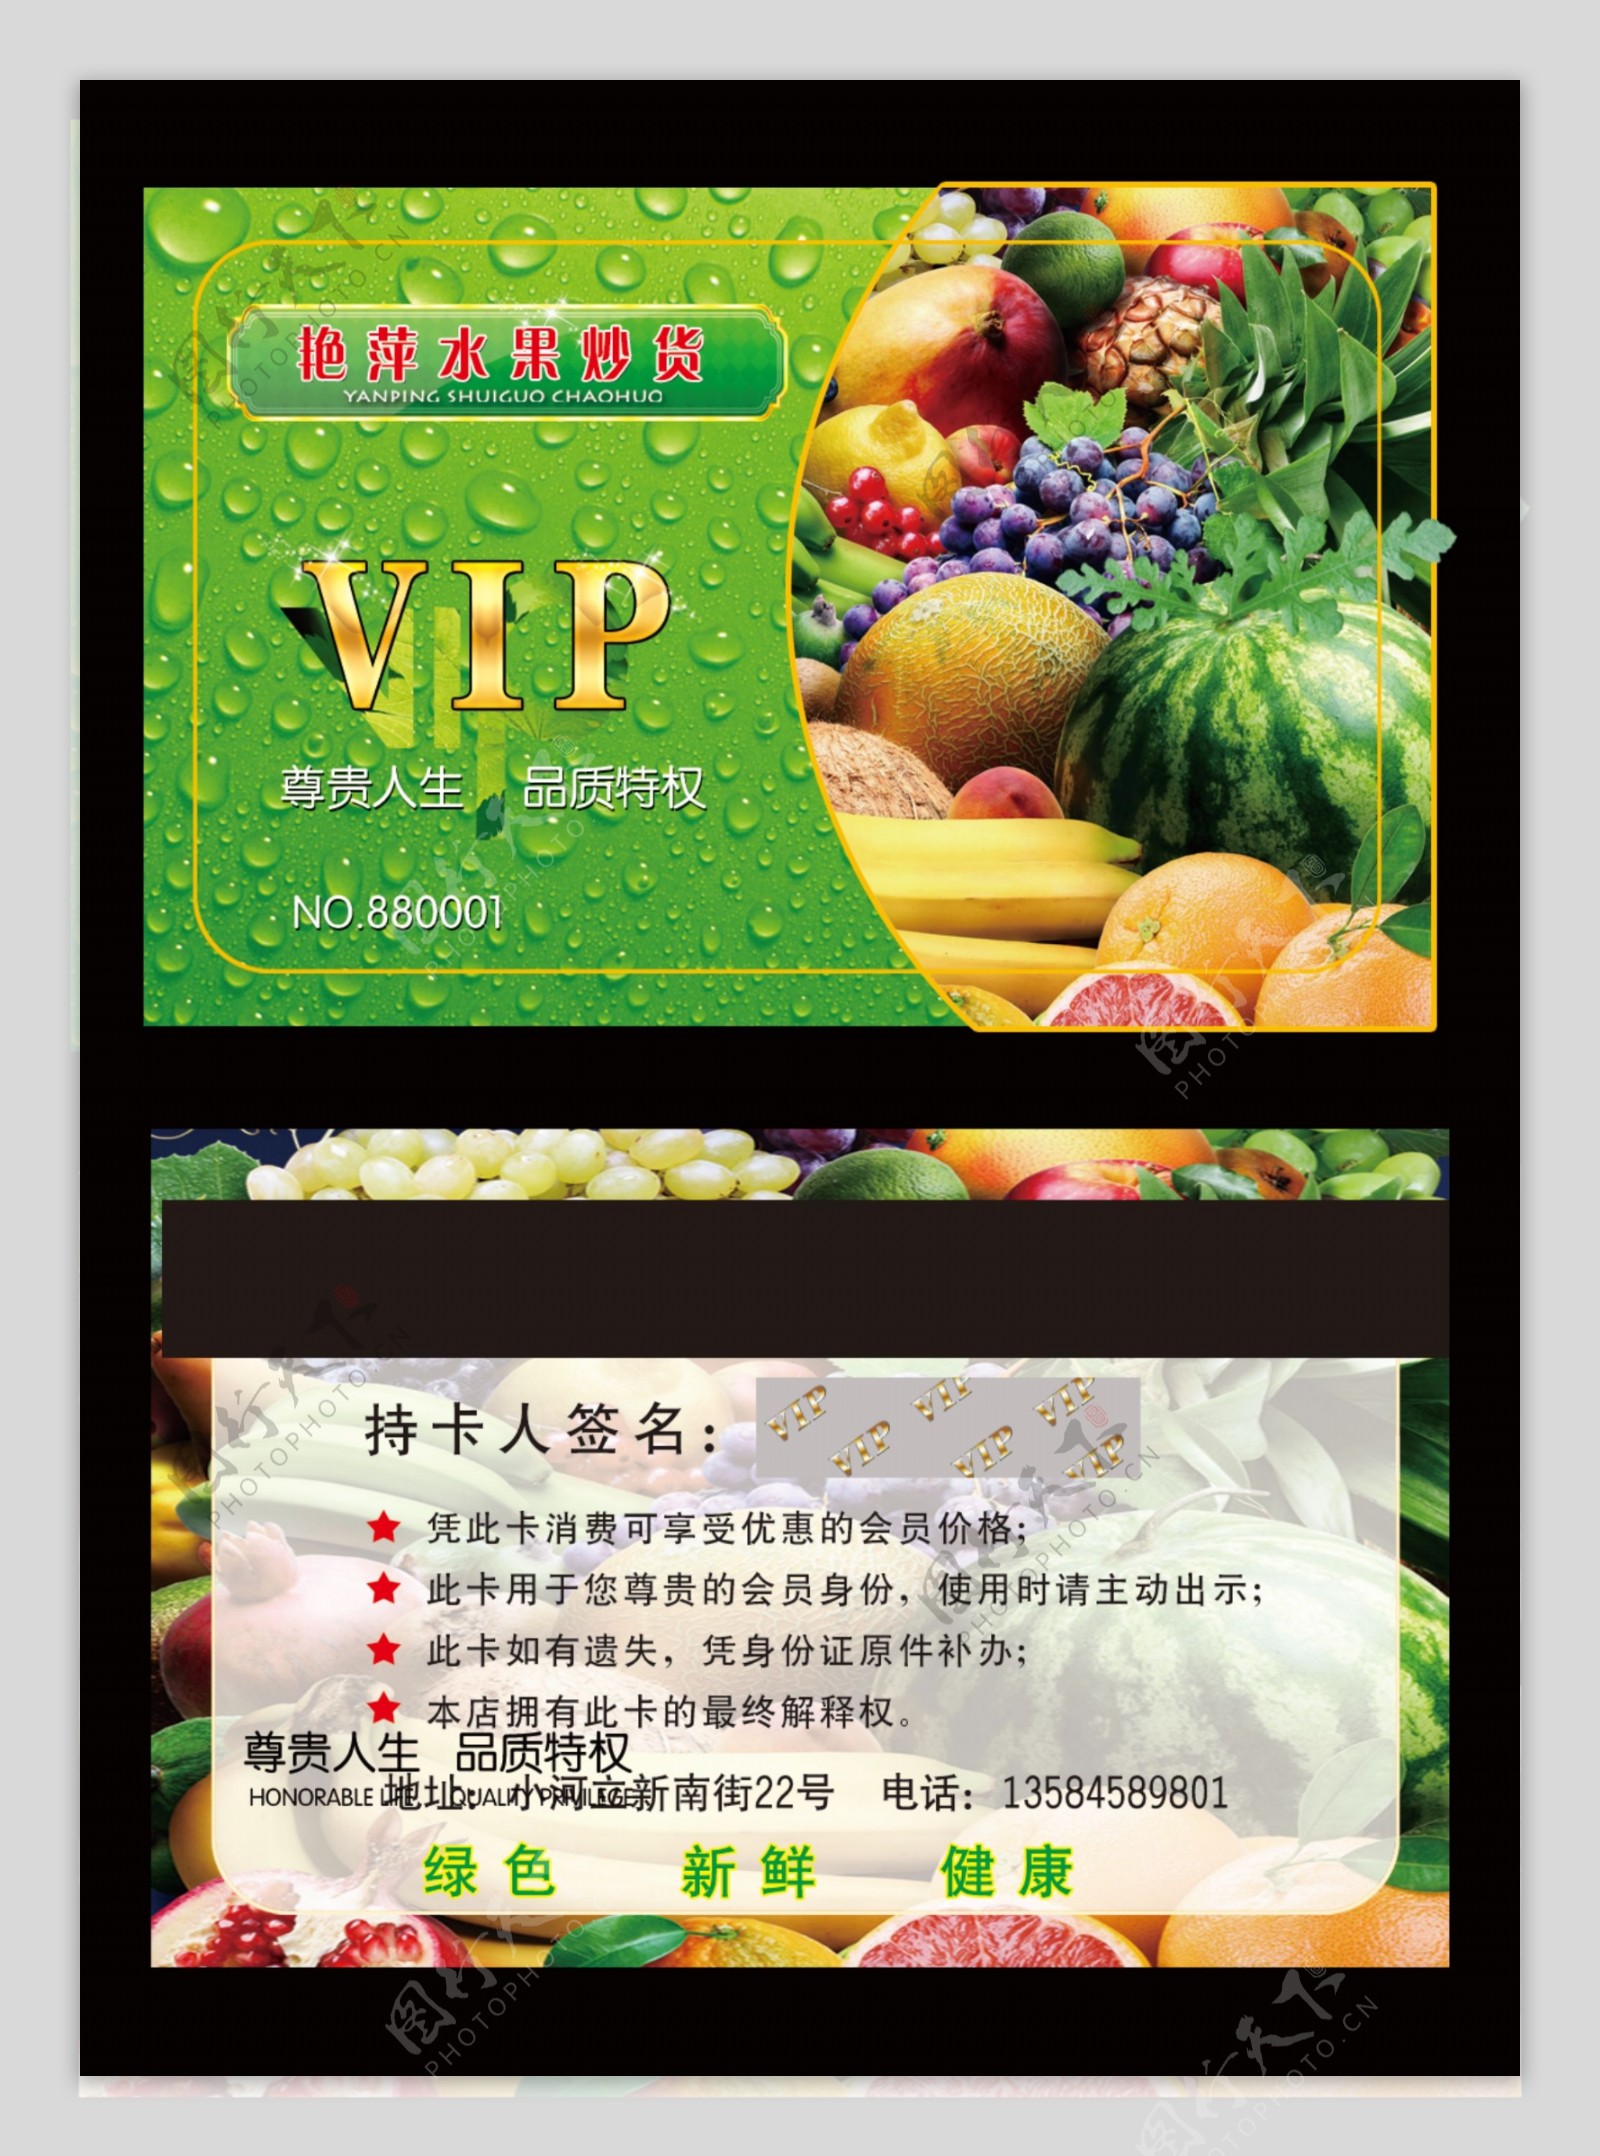 水果店VIP卡图片